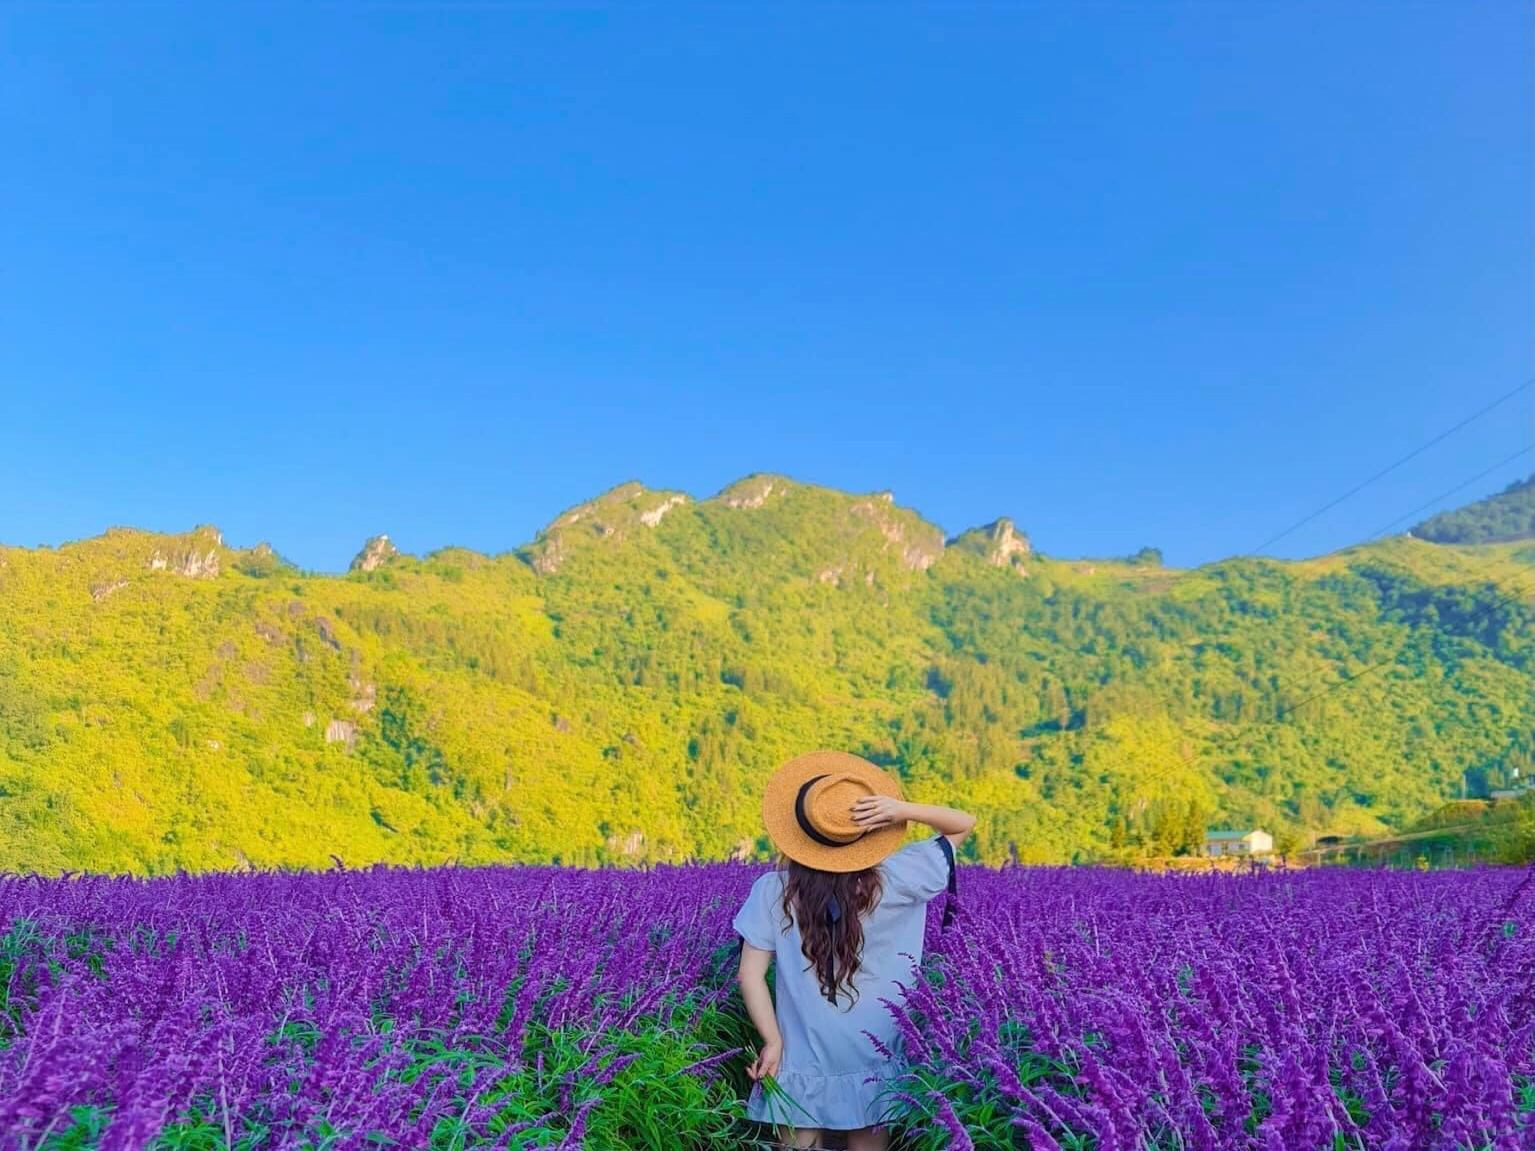 Hãy đến Sa Pa để trải nghiệm vẻ đẹp của núi rừng Tây Bắc Việt Nam. Những cánh đồng hoa cải tuyệt đẹp và không khí trong lành sẽ khiến bạn cảm thấy thư thái sau những ngày làm việc căng thẳng.